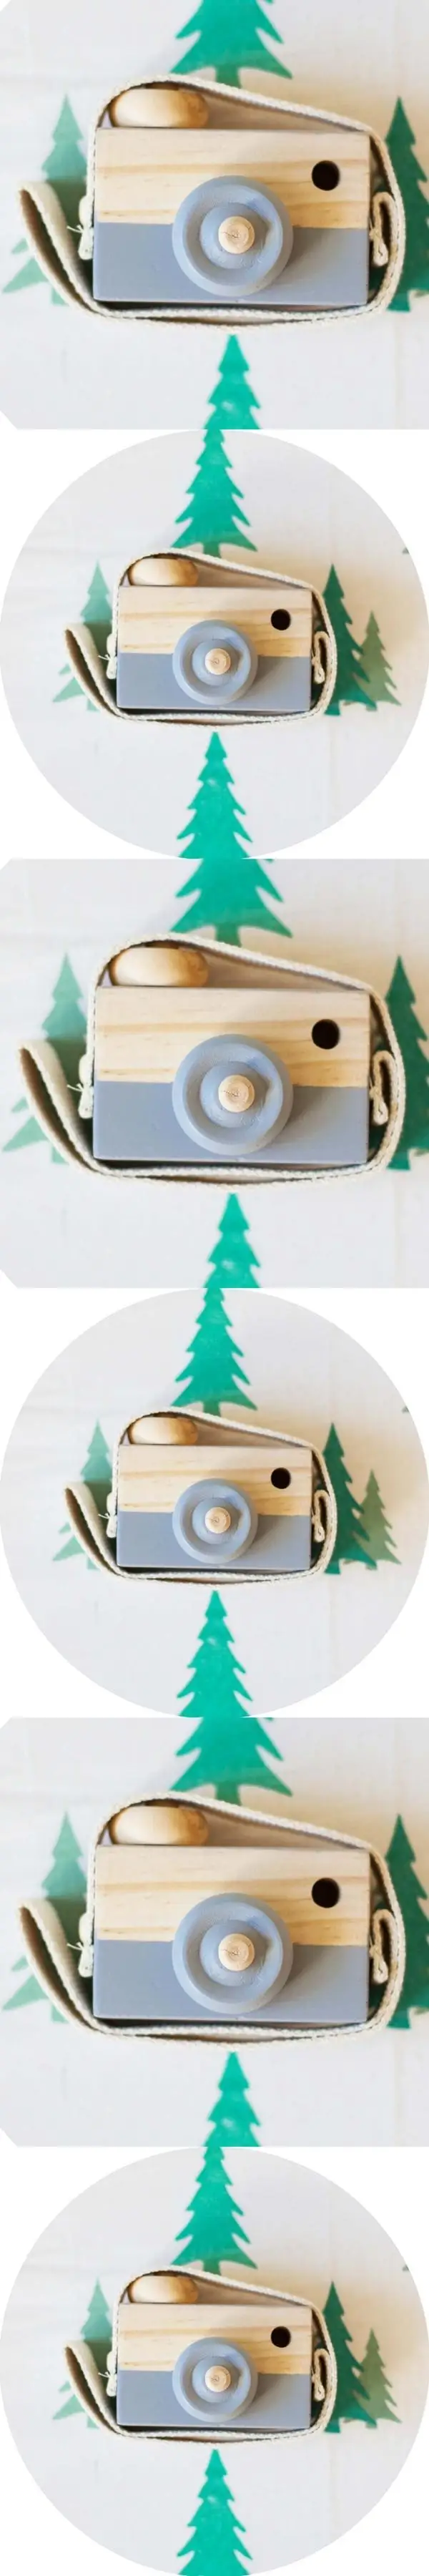 Детские милые деревянные игрушки для камеры модные аксессуары безопасные и натуральные игрушки палец EDC фокус на день рождения Рождественский подарок серая камера